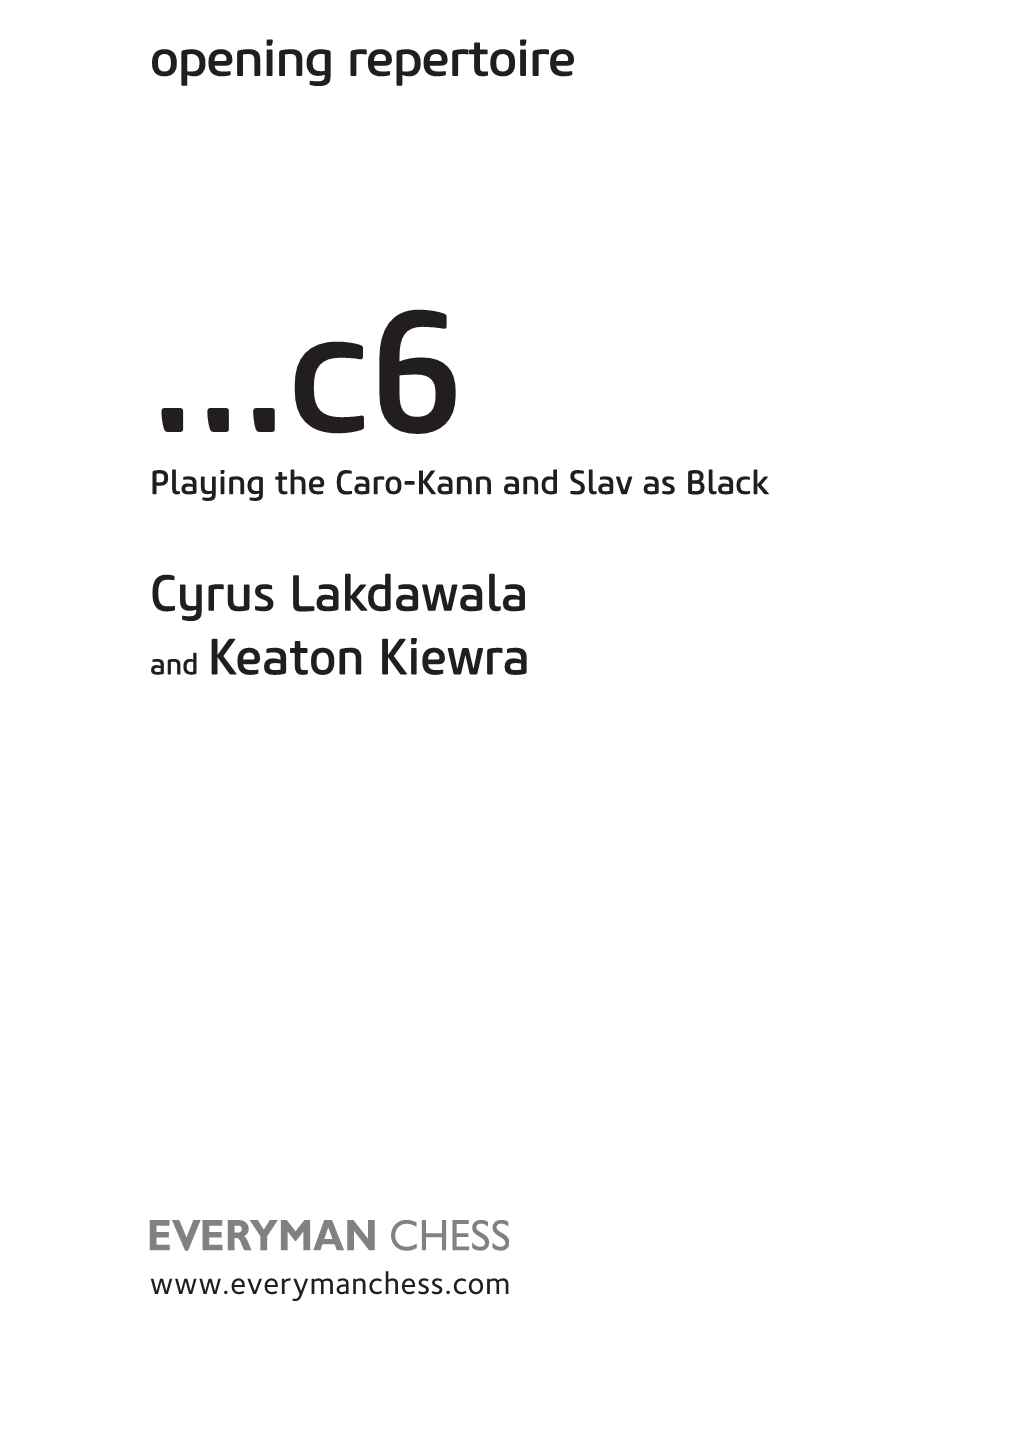 Opening Repertoire Cyrus Lakdawala and Keaton Kiewra